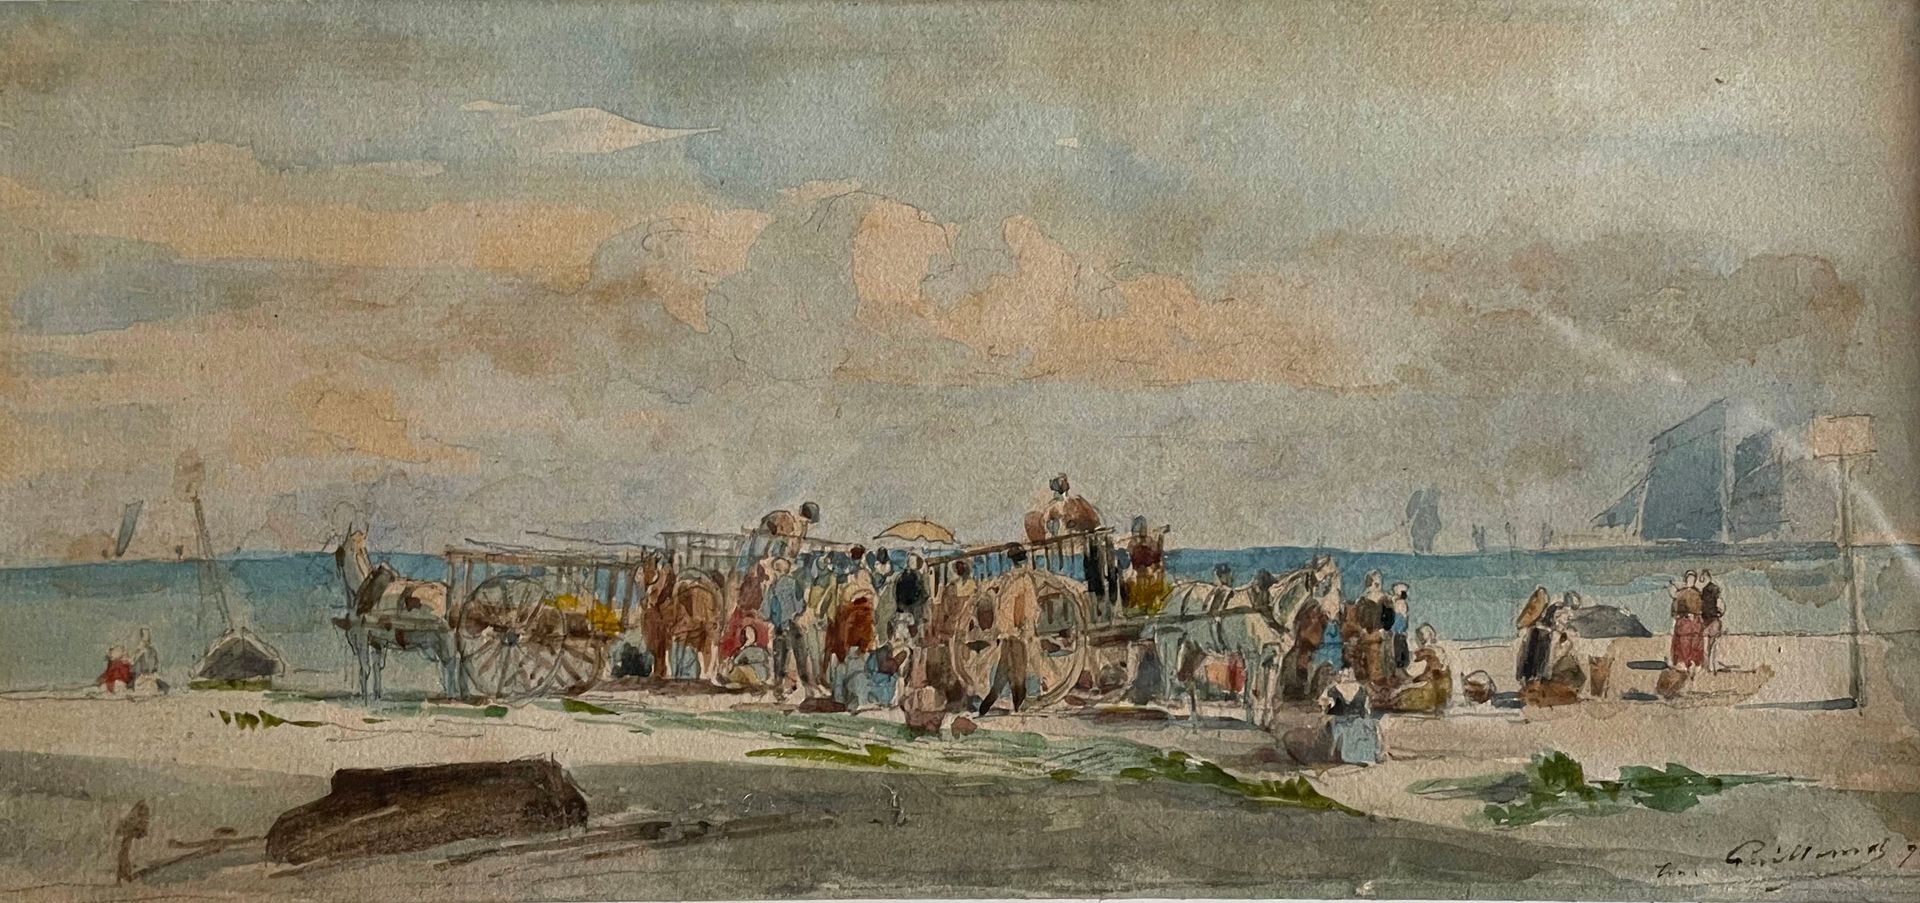 Null scuola della fine del XIX secolo
Carrelli sulla spiaggia
Piccolo acquerello&hellip;